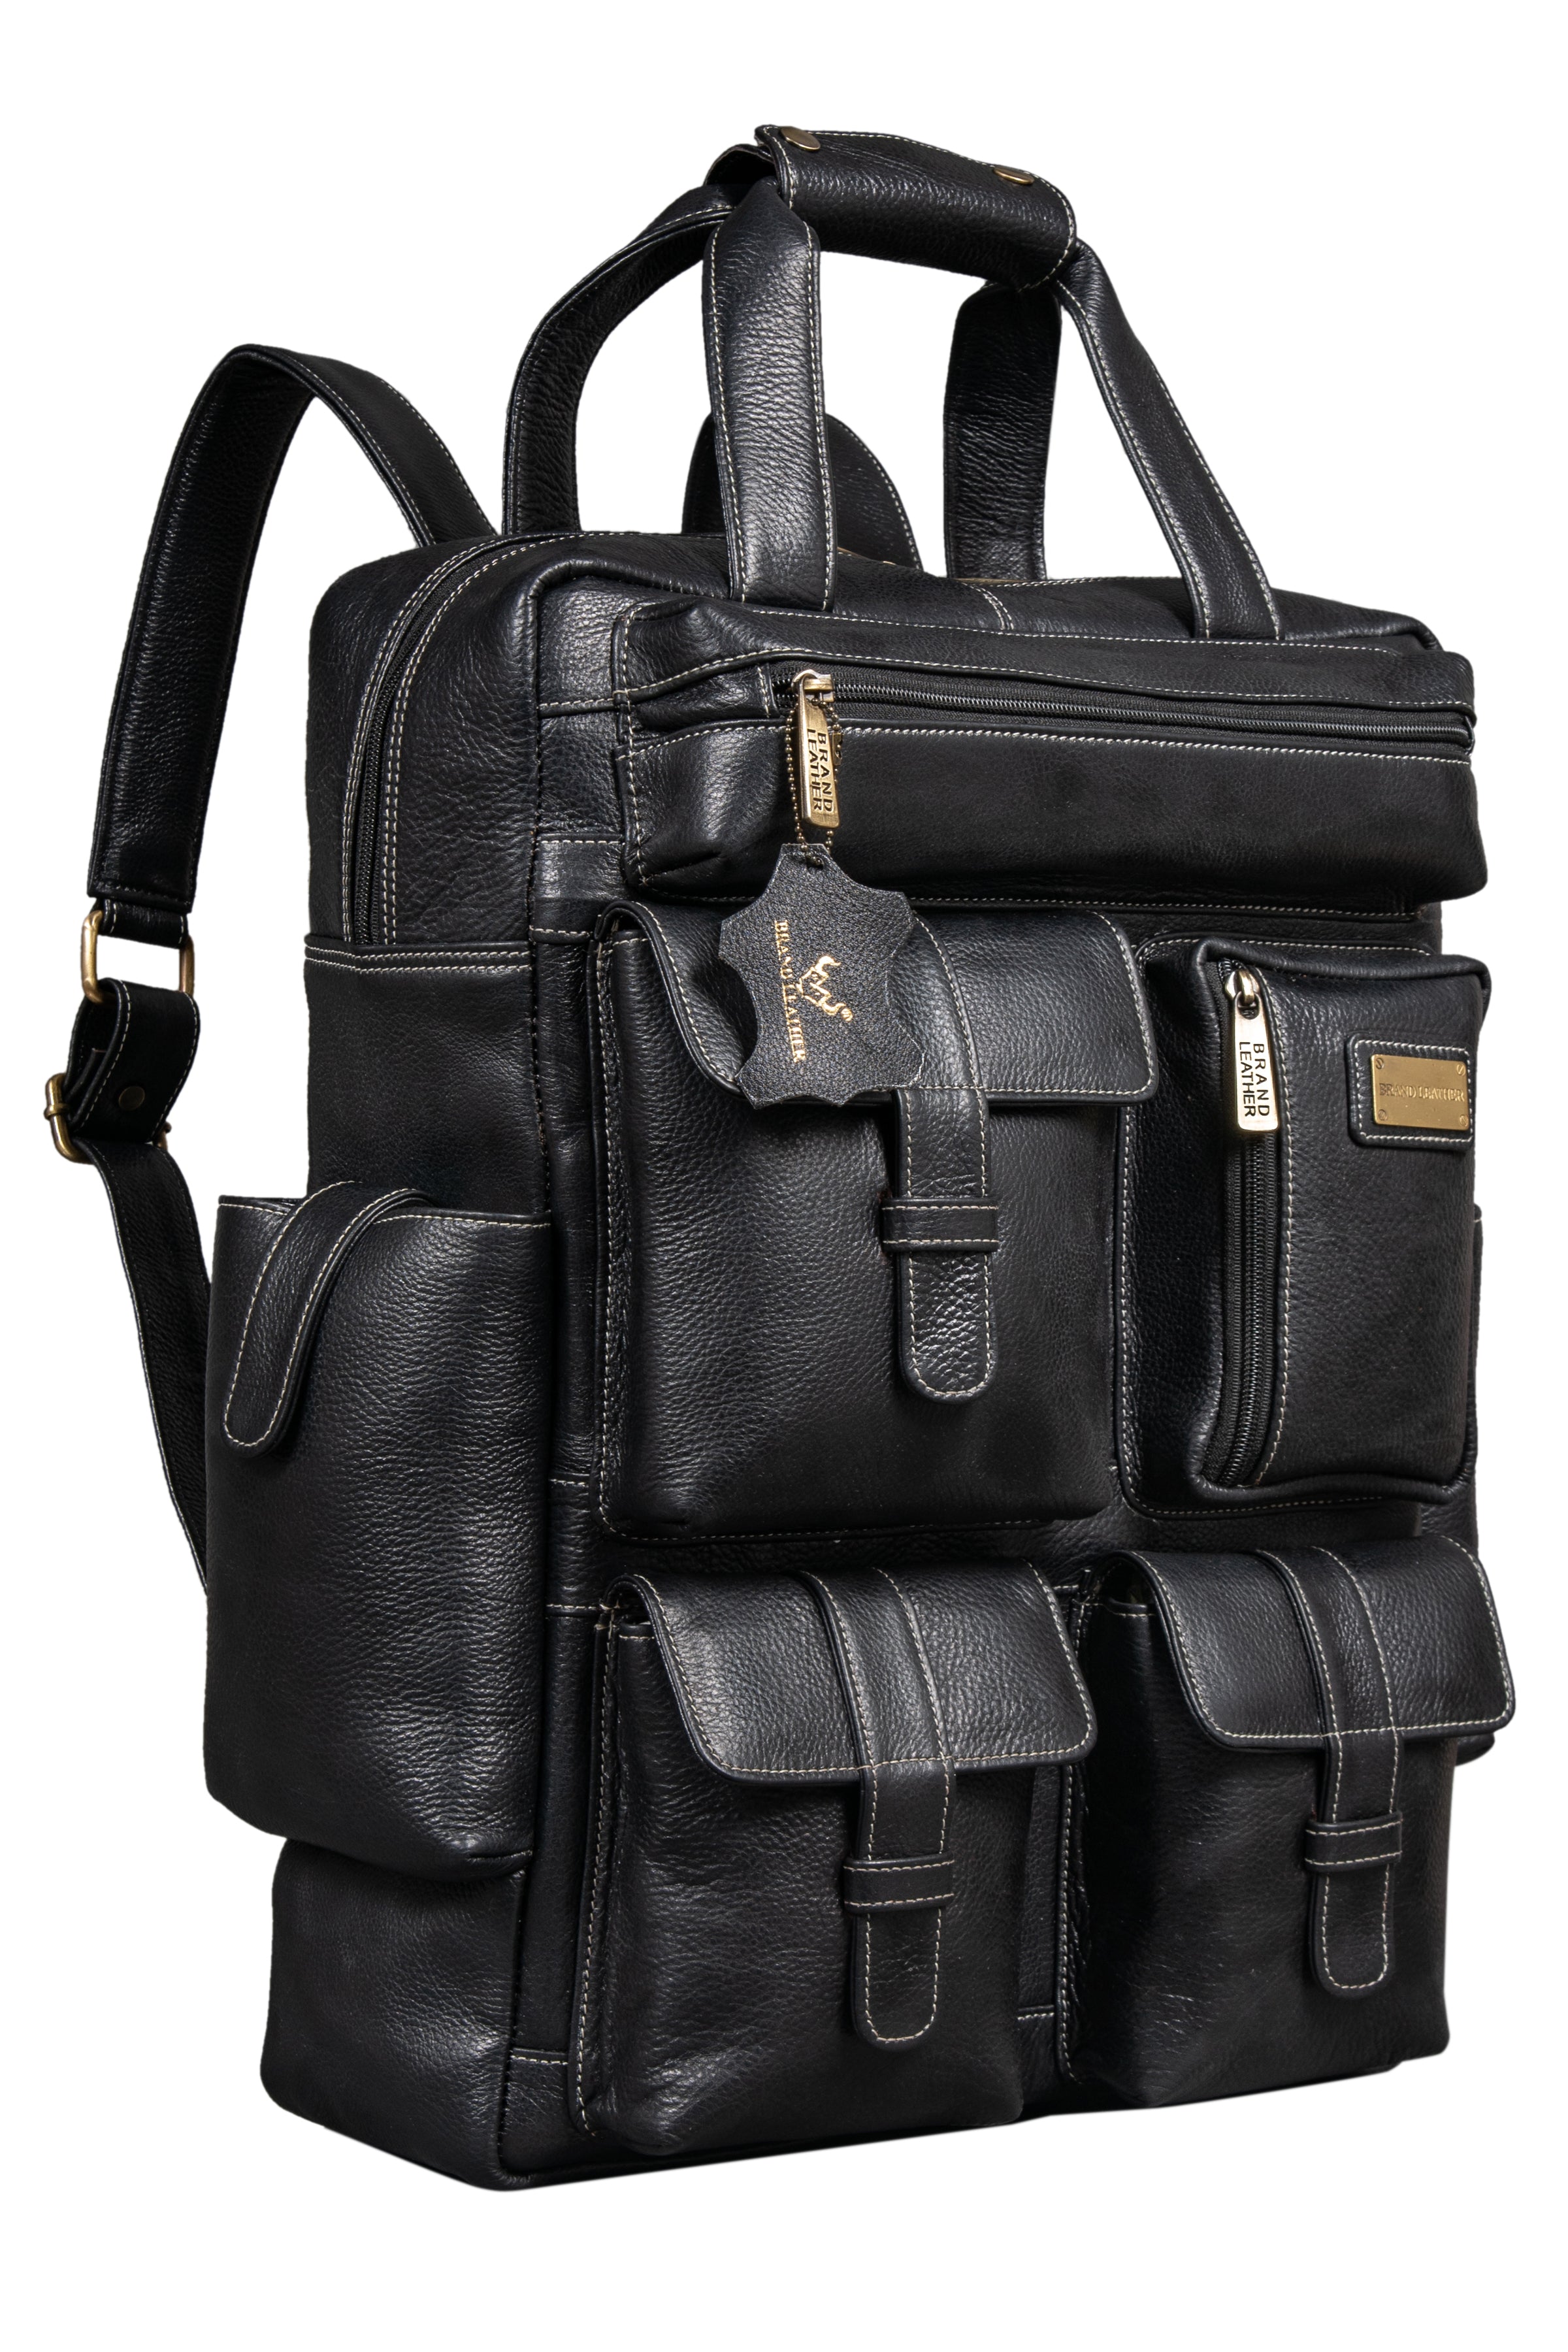 F Gear President Light Weight Office Backpacks - Best Leatherette Backpacks  – F Gear.in